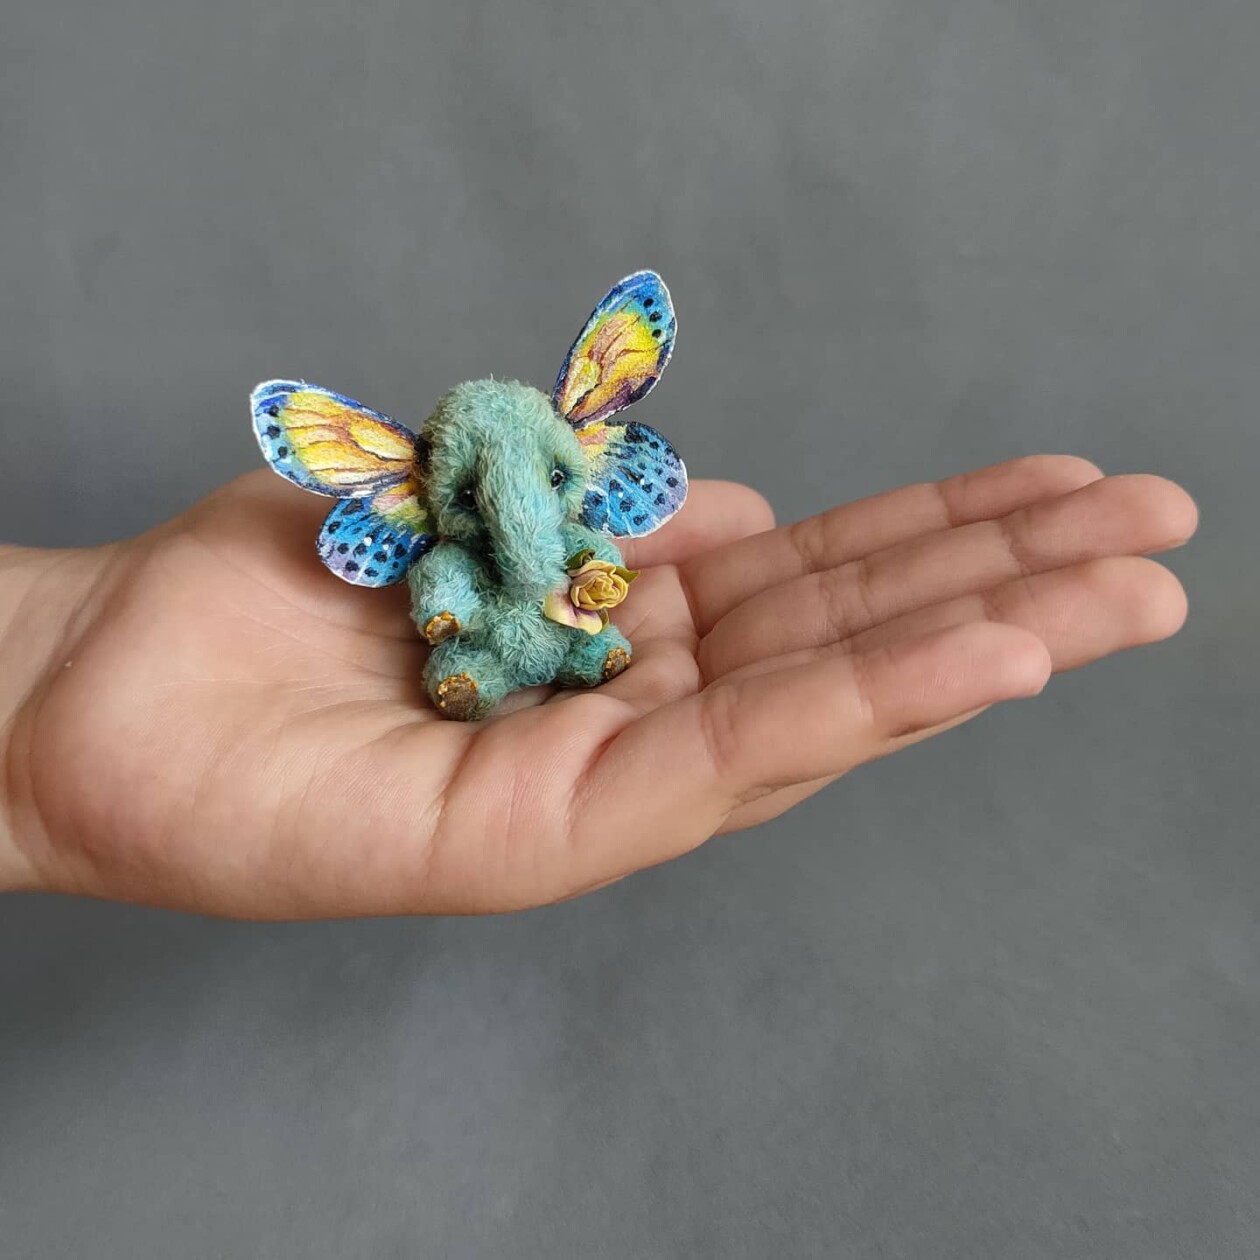 Gorgeous Animal Toys In Miniature By Koshcheeva Anna (8)